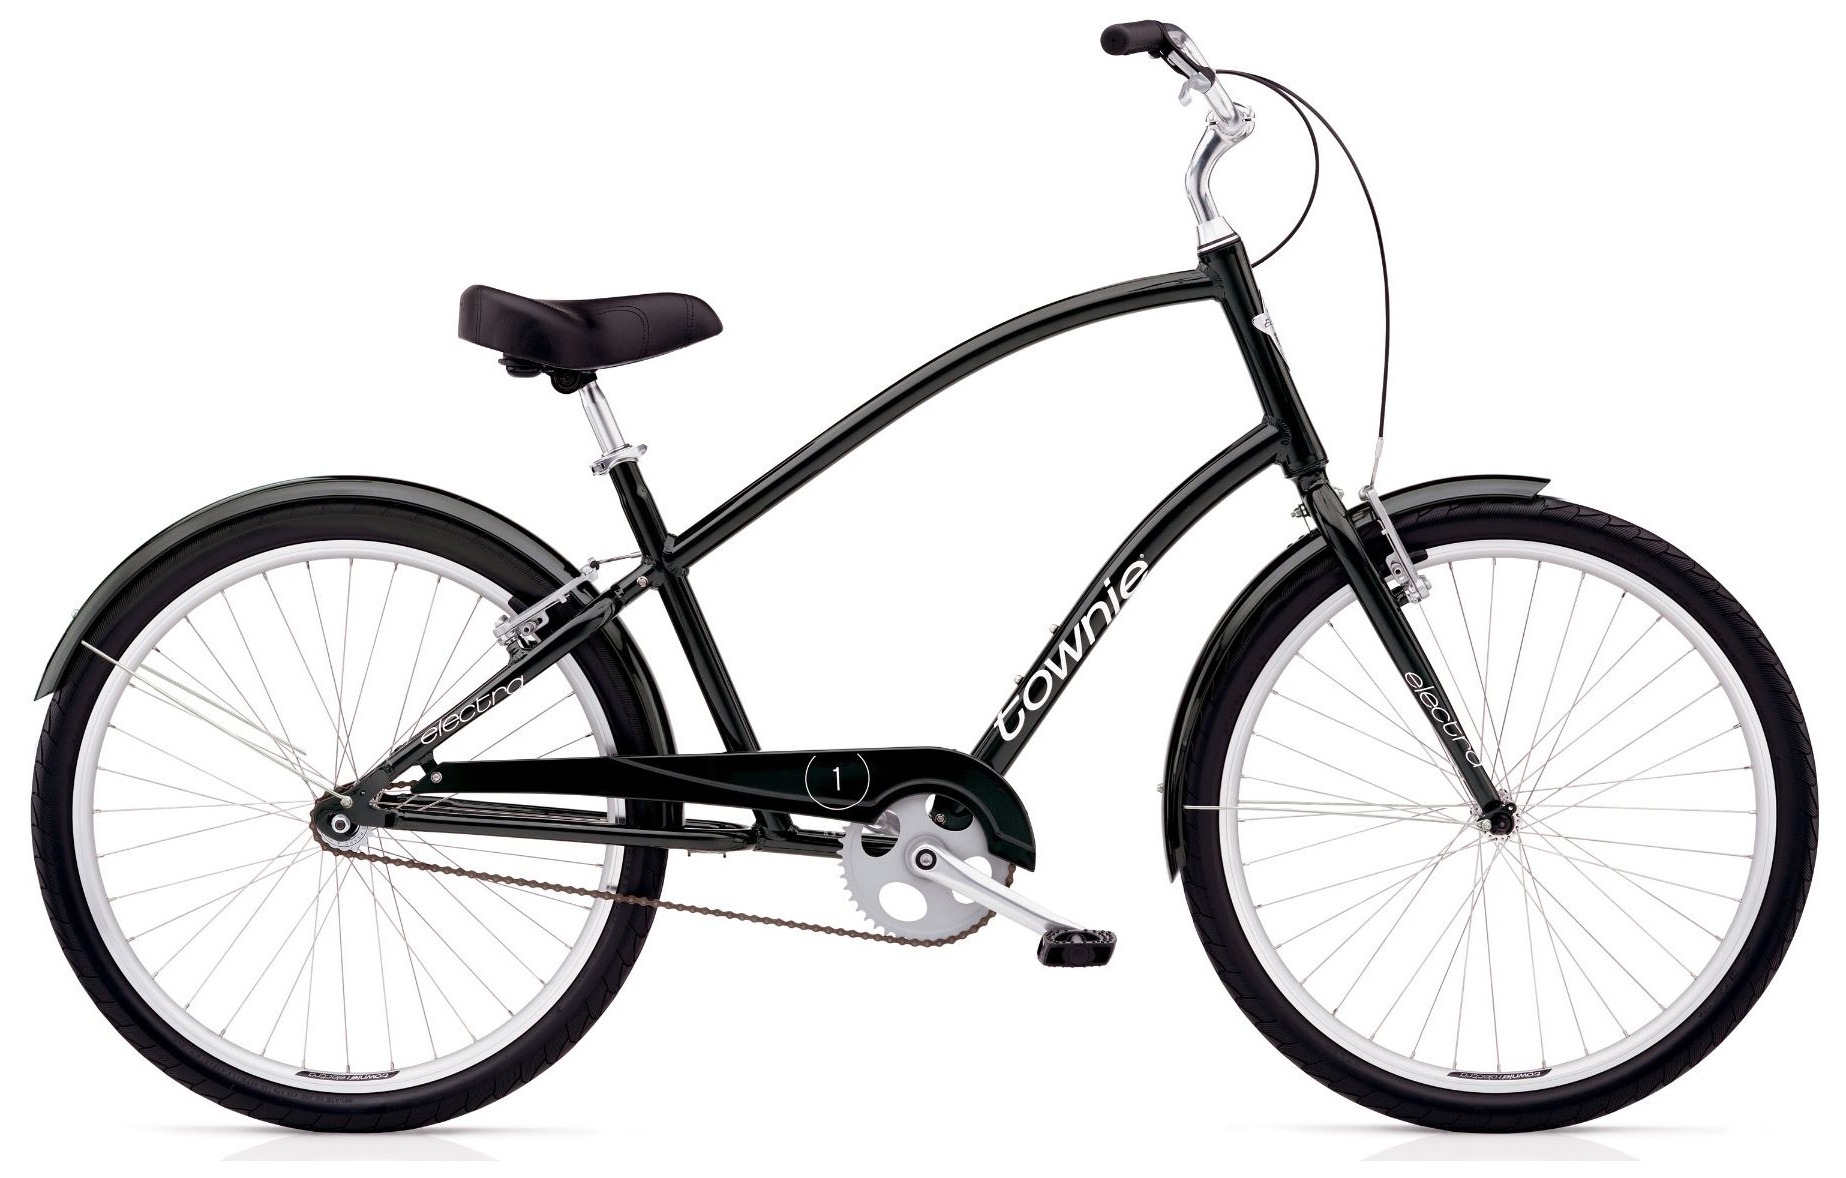  Отзывы о Городском велосипеде Electra Townie Original 1 2019